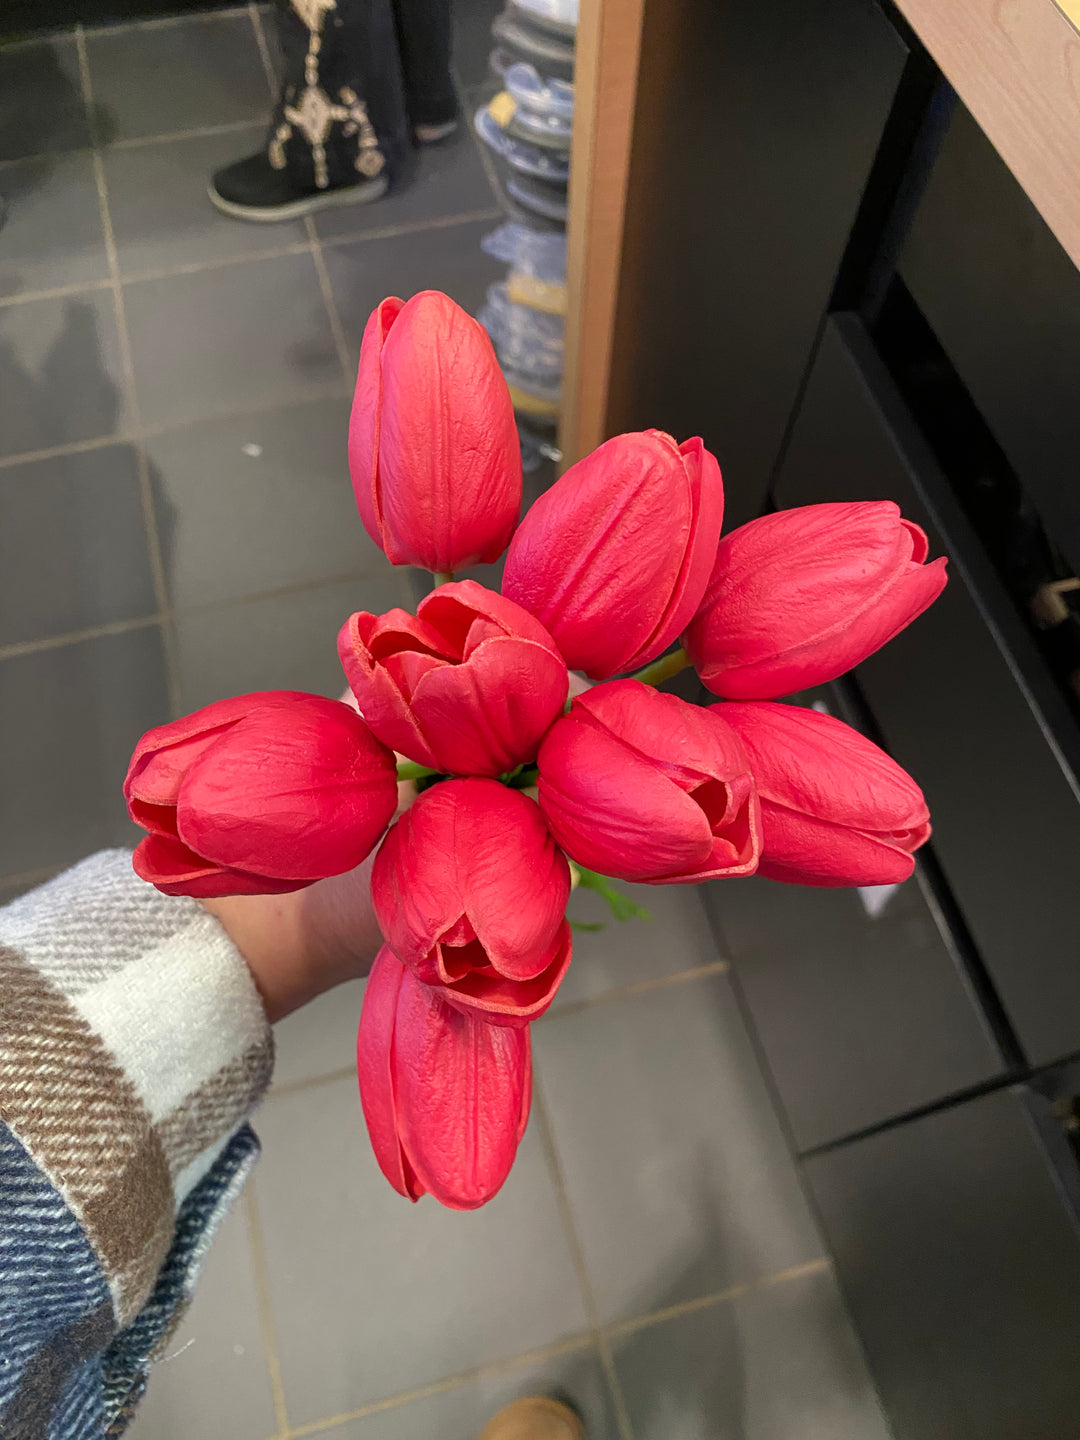 Bundle Of 9 Tulips